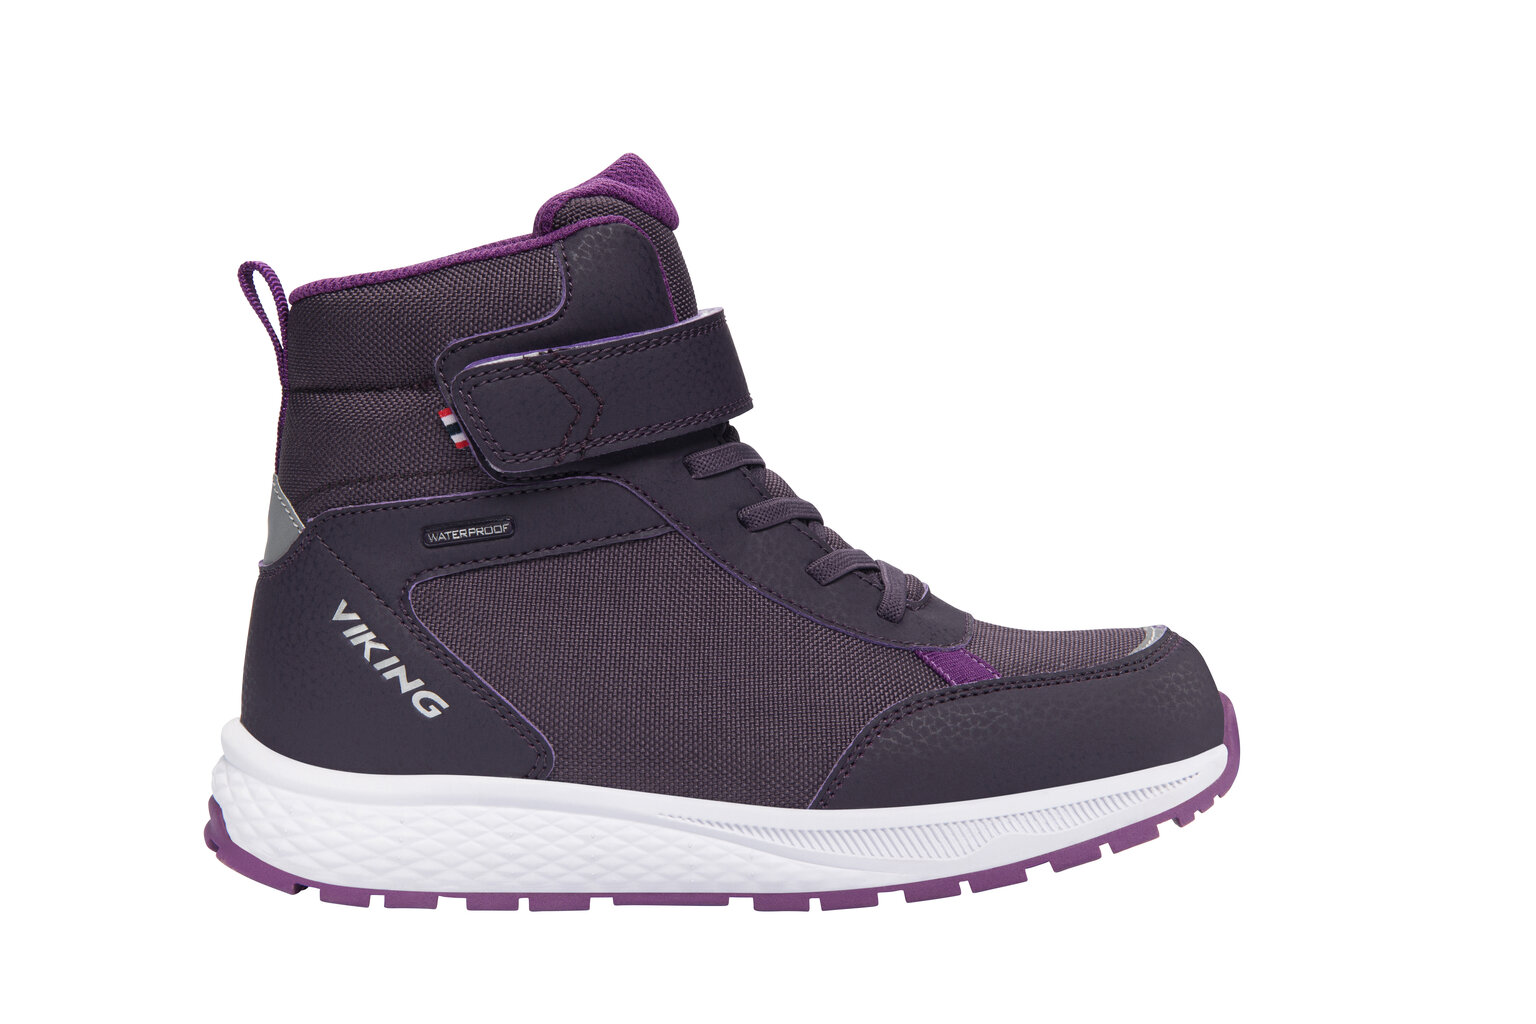 Viking jaunimo žieminiai batai EQUIP WARM WP 1V, tamsiai pilkai violetiniai kaina ir informacija | Žieminiai batai vaikams | pigu.lt